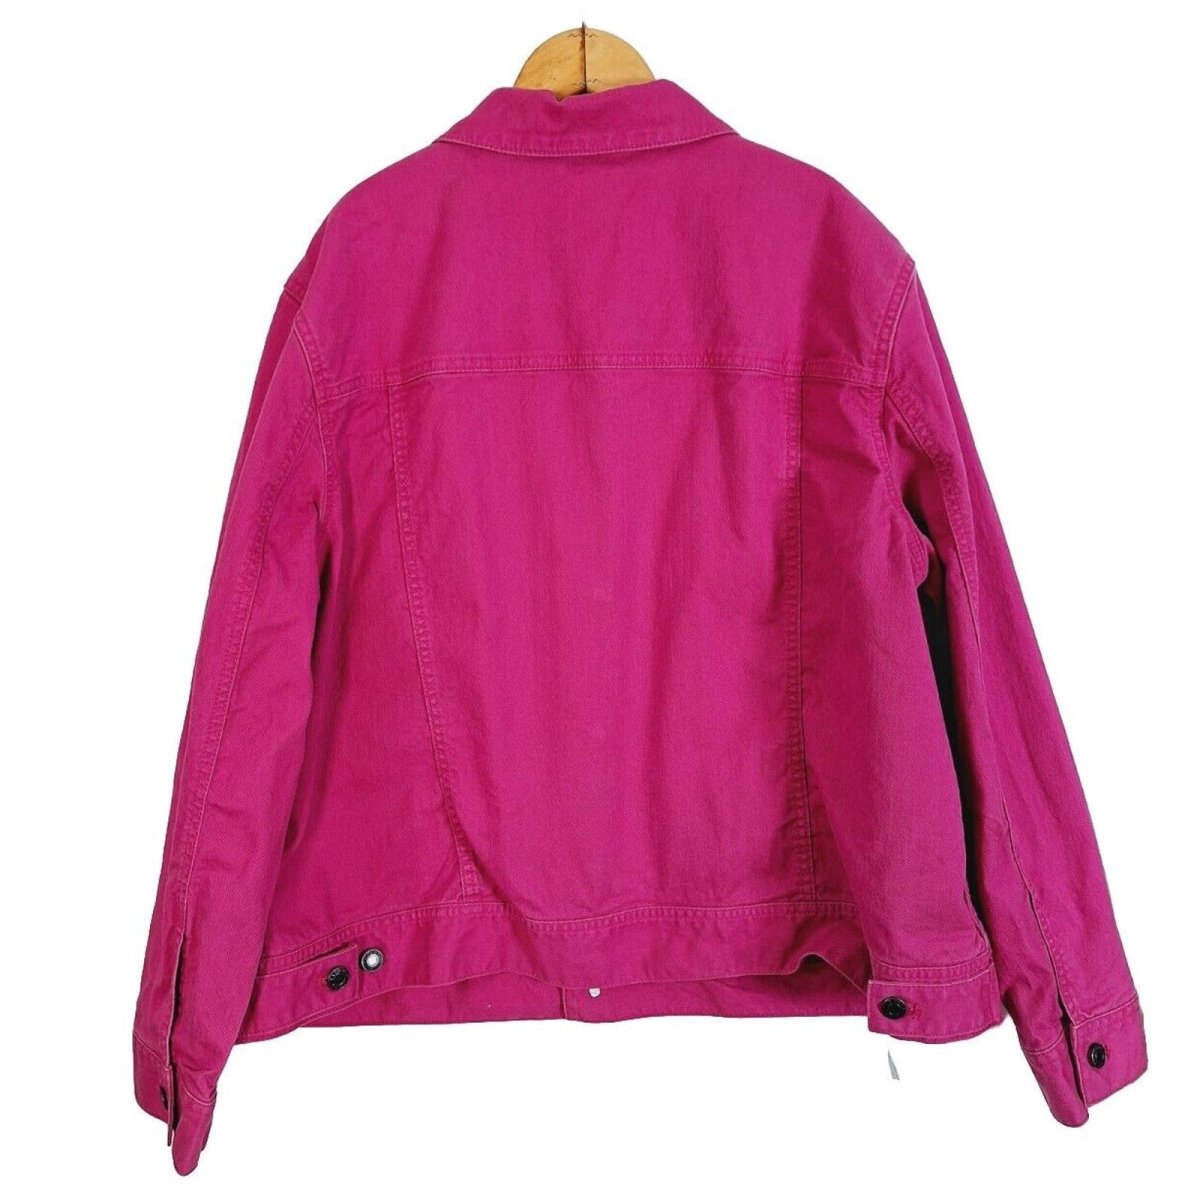 Modern 2010s Barbie Pink Stretch Denim Trucker Jacket Women's Size 2X - themallvintage The Mall Vintage